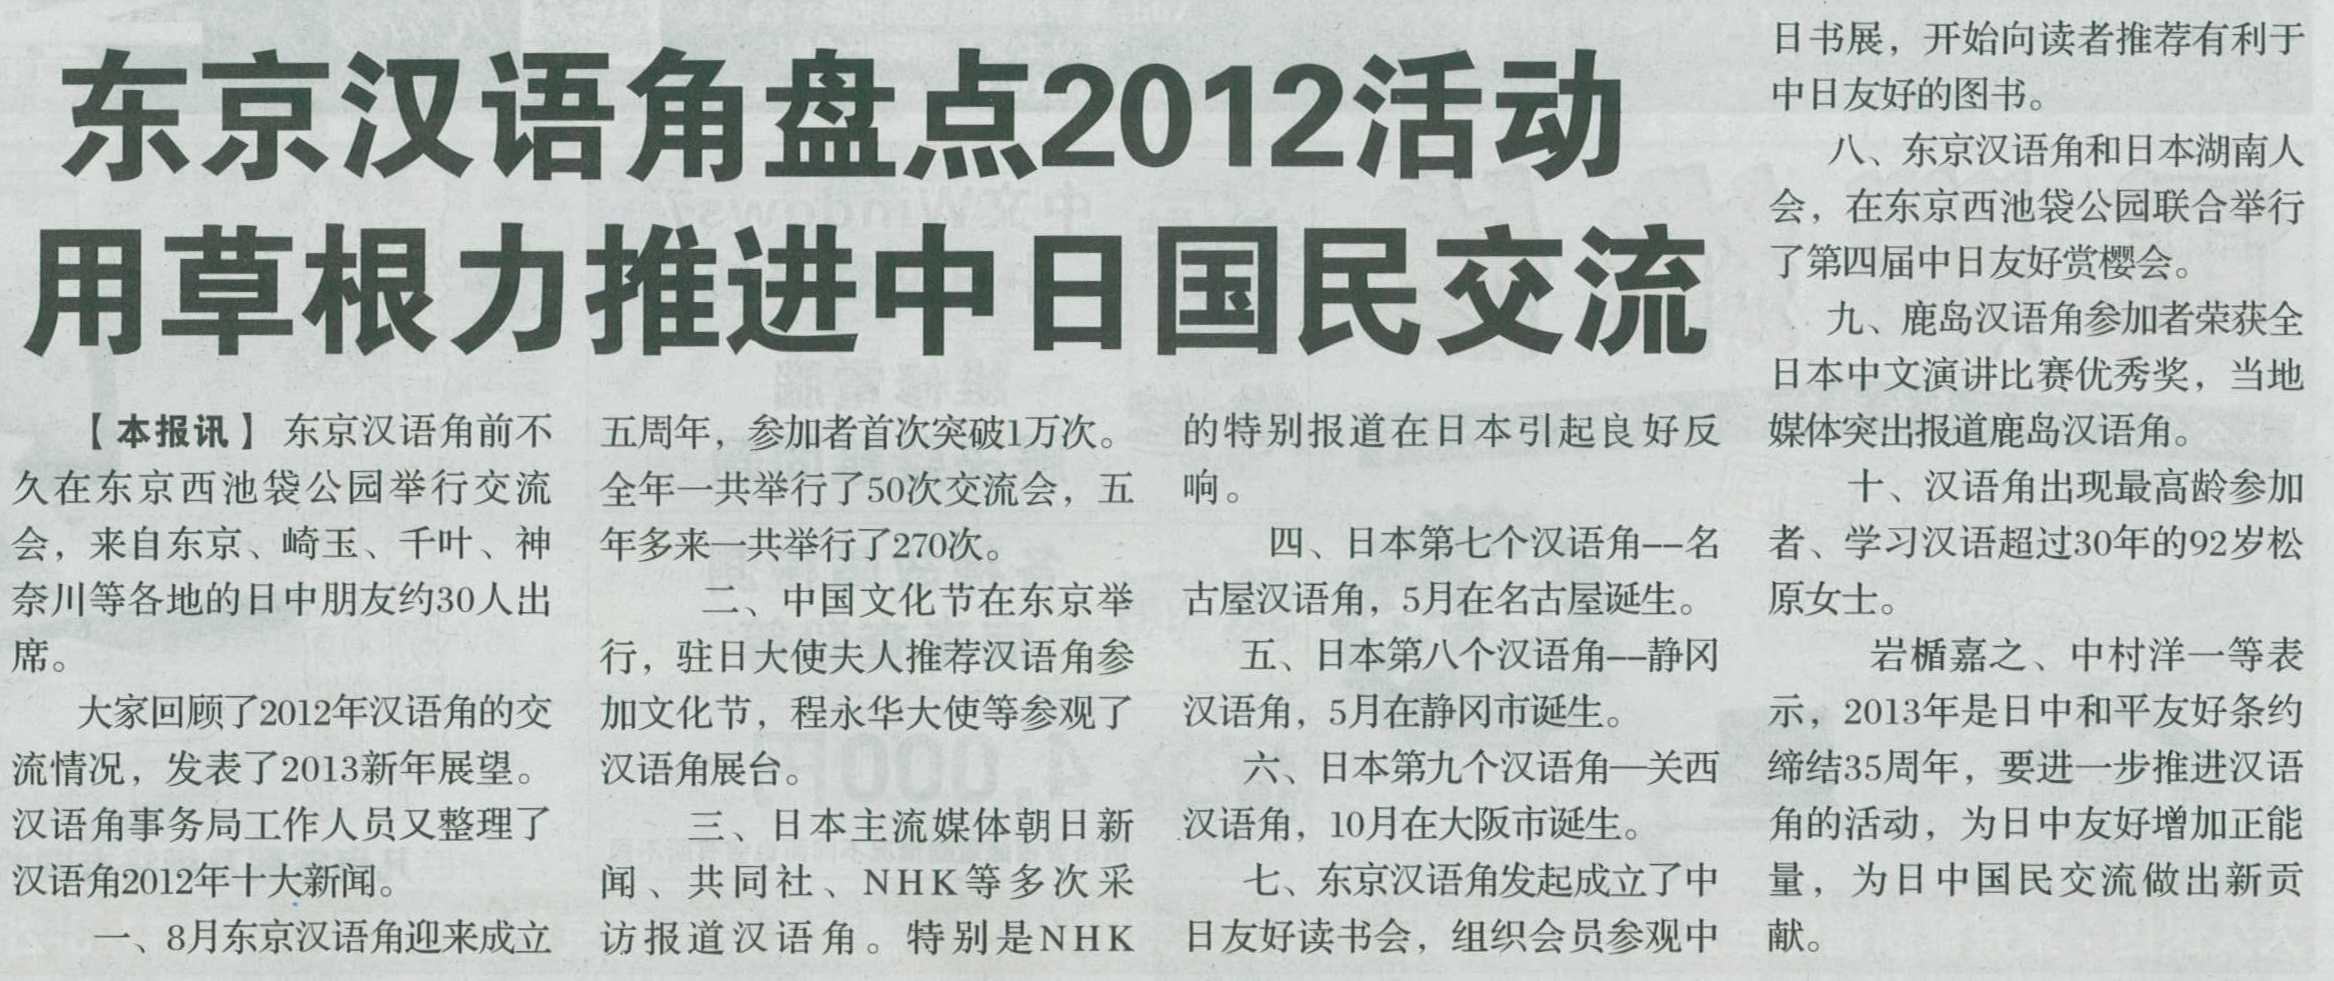 昨天在东京发行的《华风新闻》刊登了《东京汉语角盘点2012活动 用草根力推进中日国民交流》_d0027795_1325246.jpg